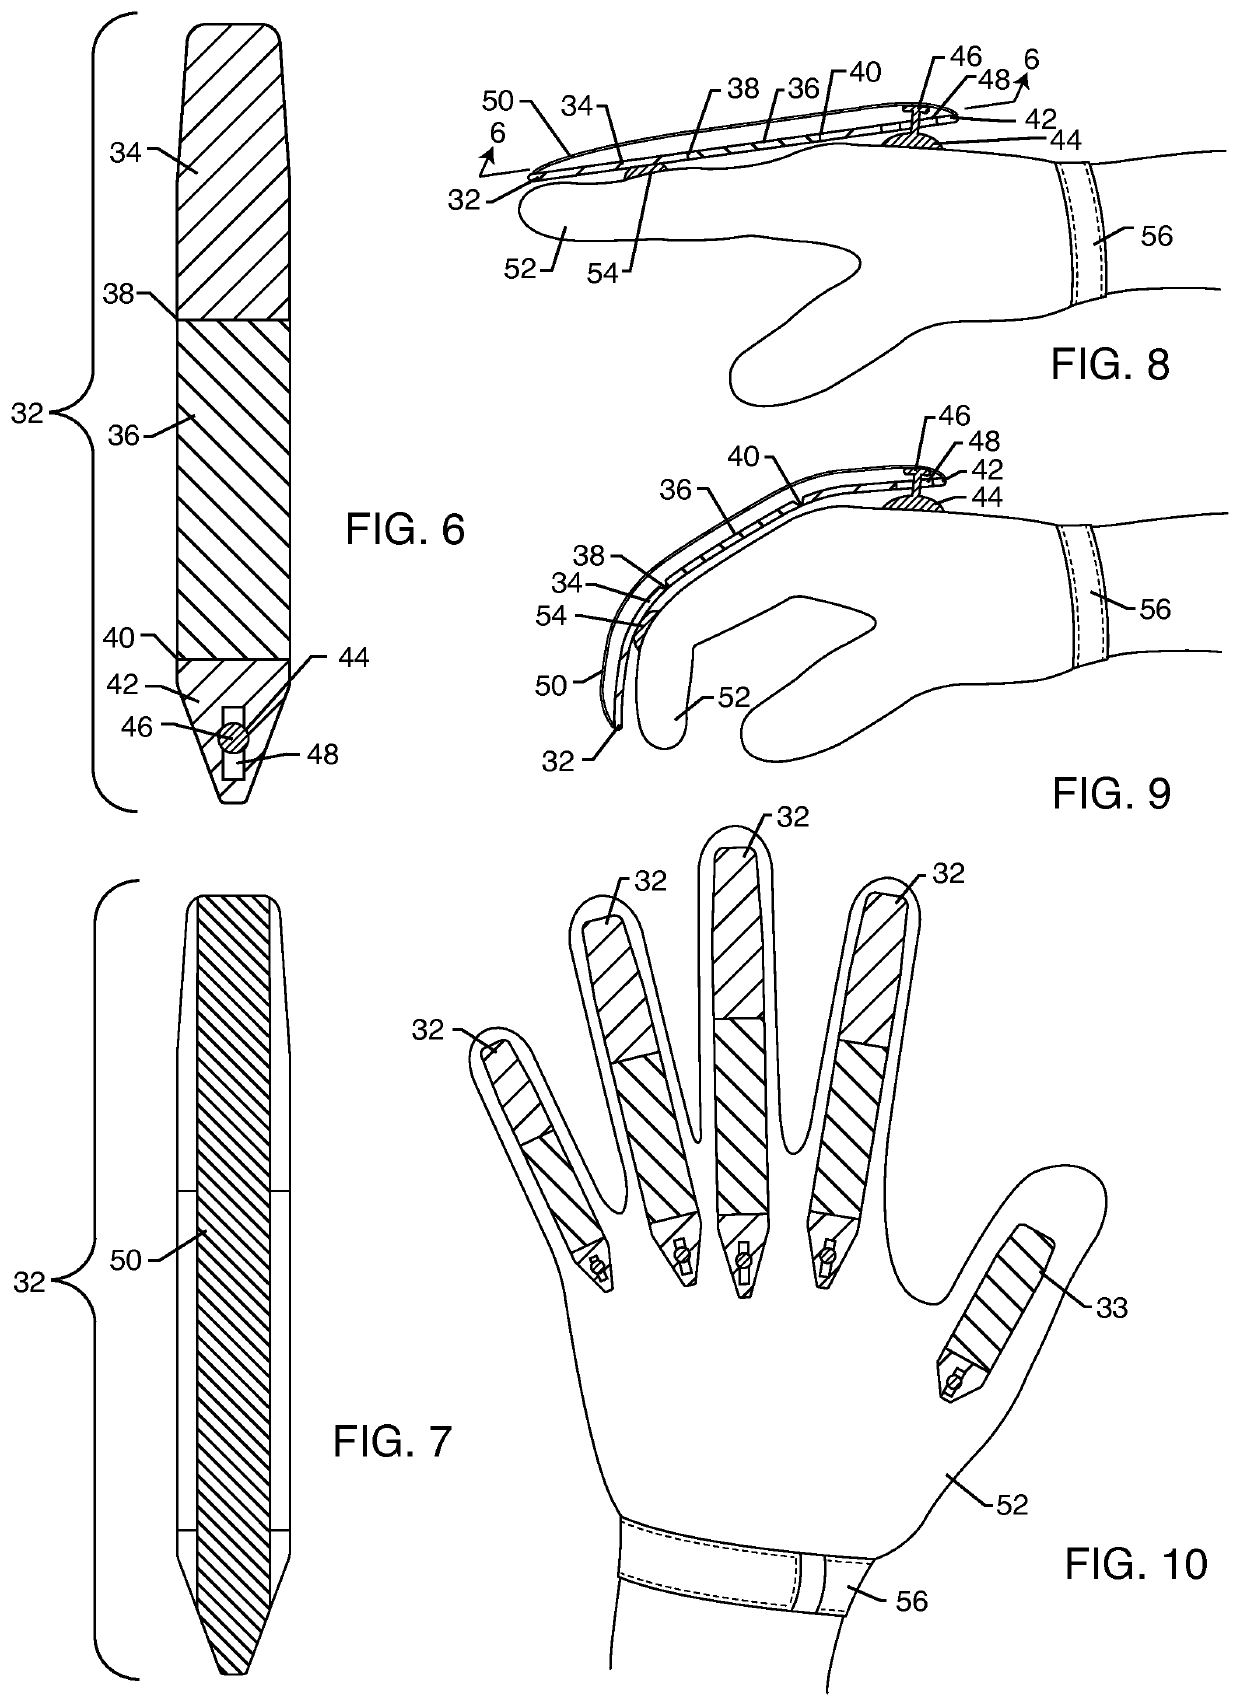 Glove preventing hyper-extended or jammed fingers